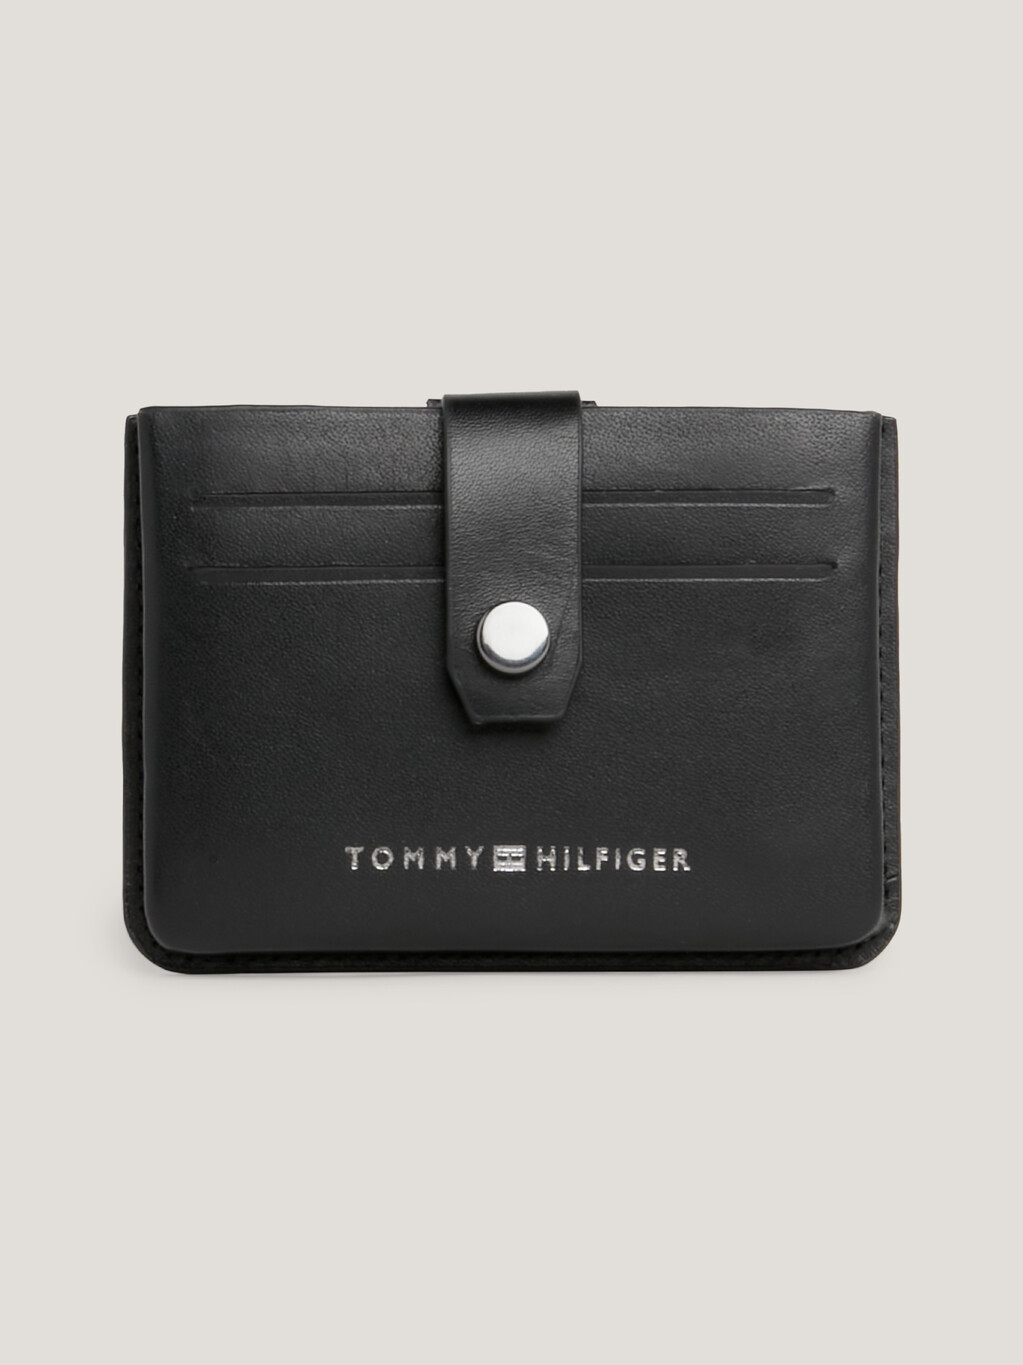 Prep Moulded Leather Credit Card Holder, Black, hi-res